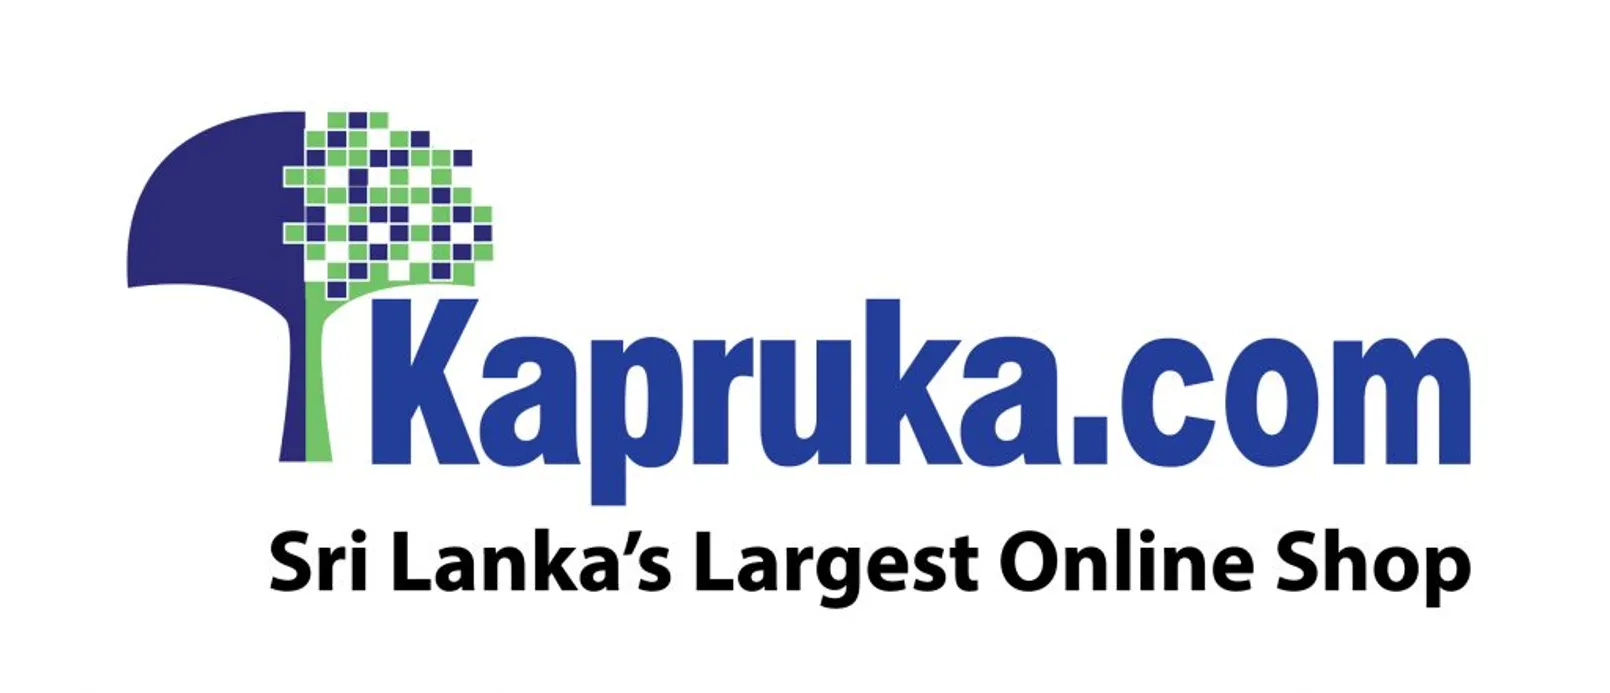 Kapruka Logo 1024x441 1.jpg